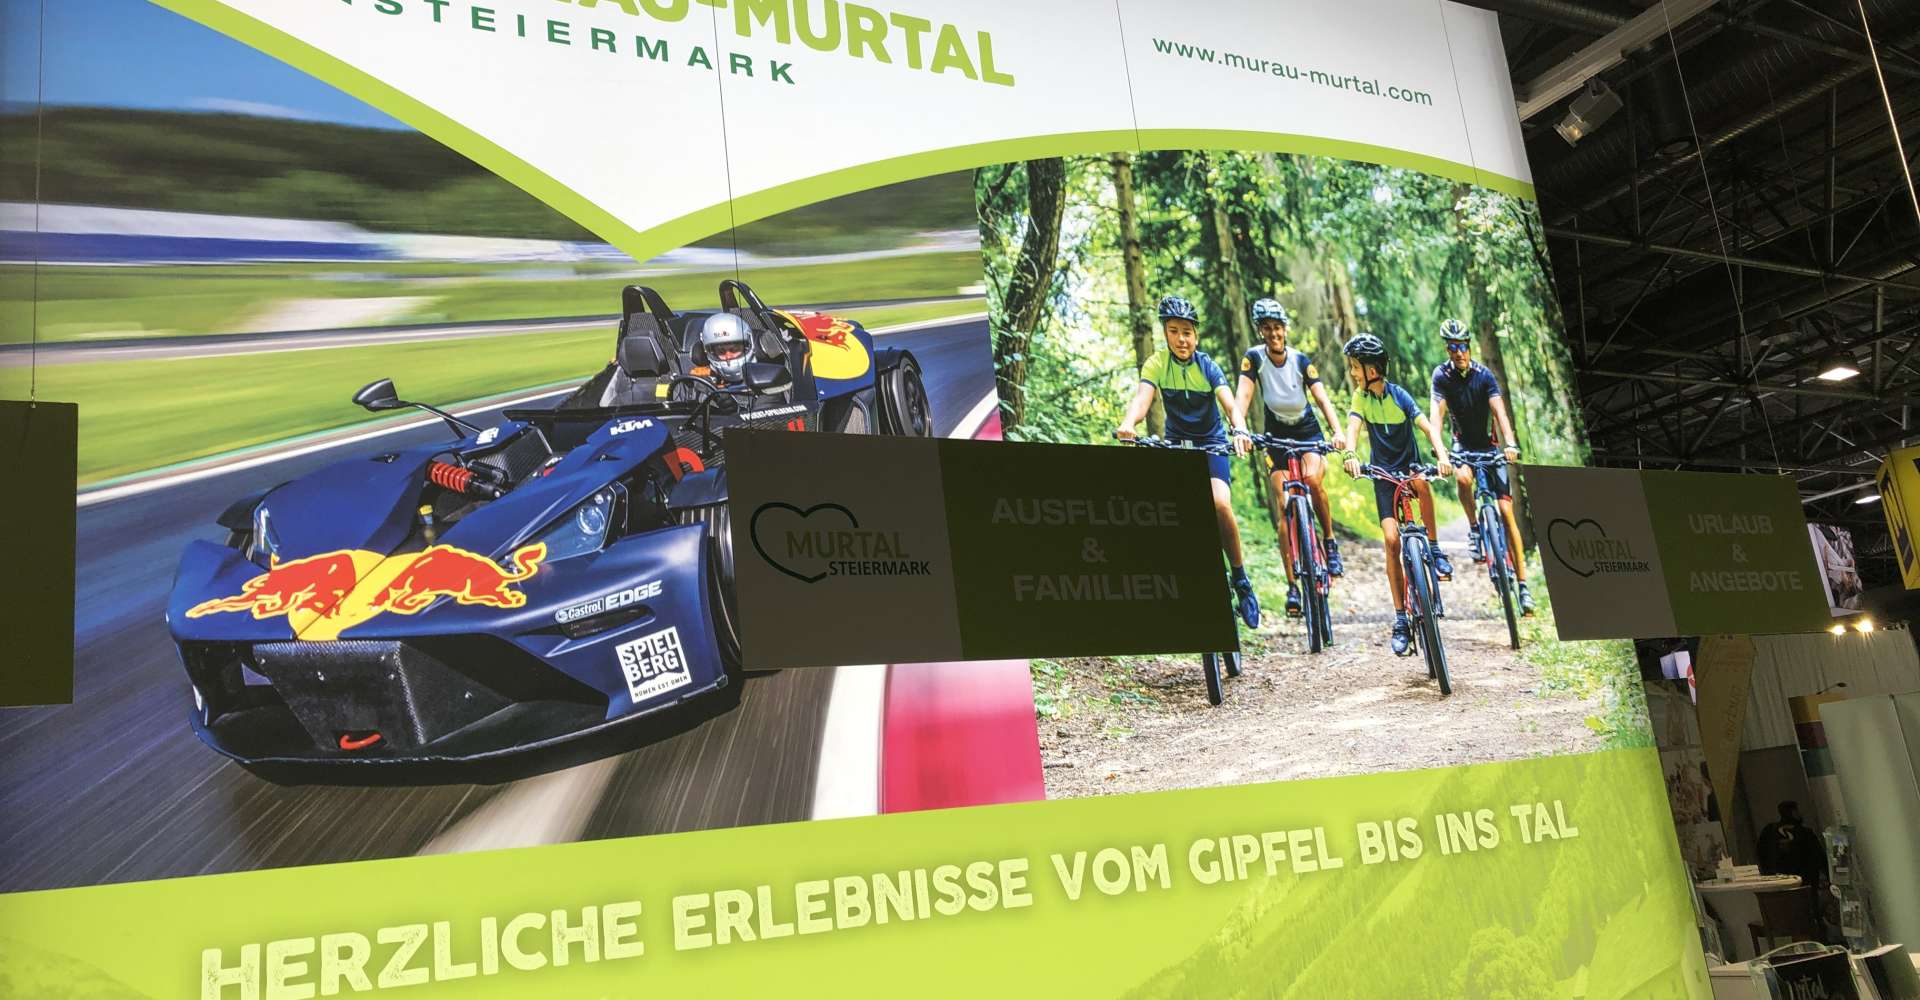 <p>Die Urlaubsregion Murau-Murtal präsentiert sich mit dem Angebot der Region auch auf der Ferienmesse Wien.</p> Copyright: